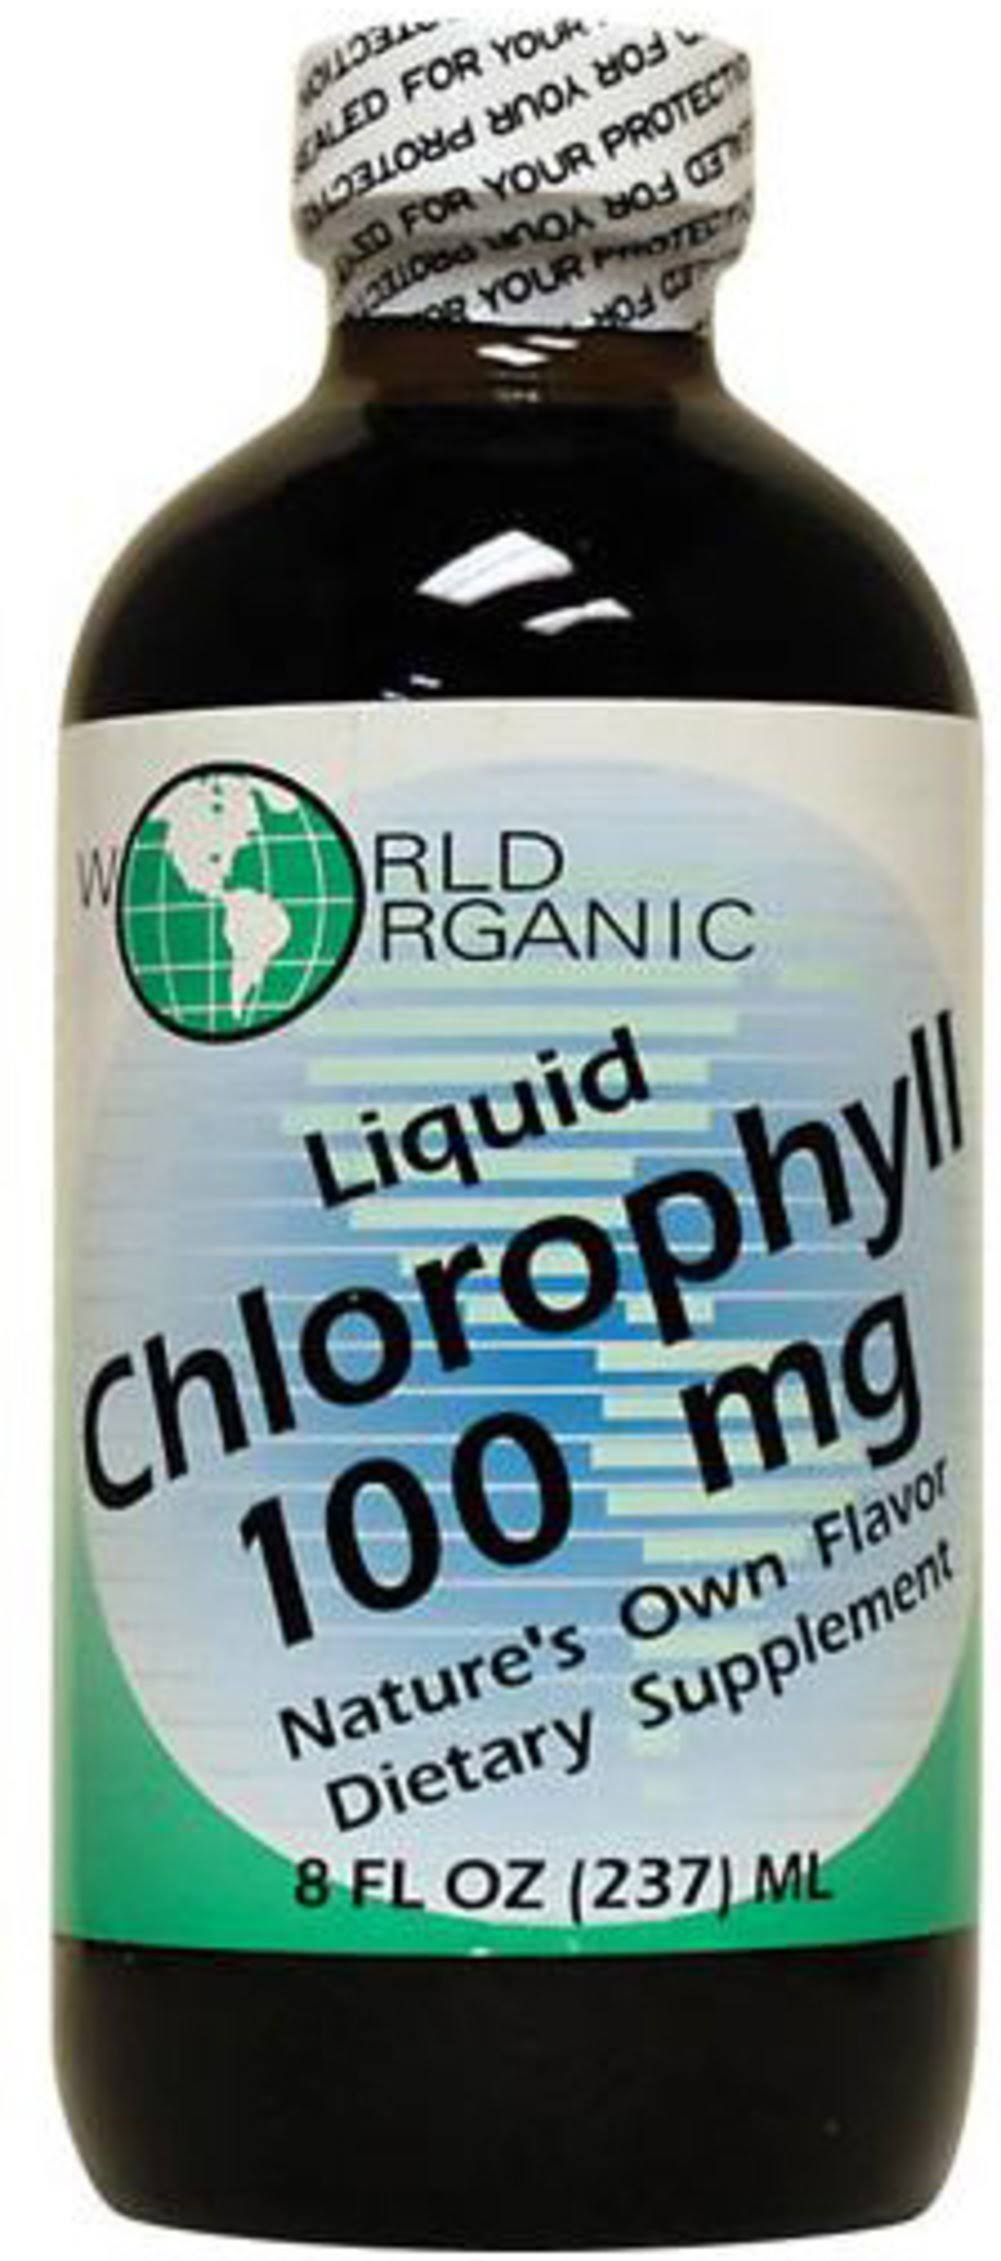 World Organic Liquid Chlorophyll - 100mg